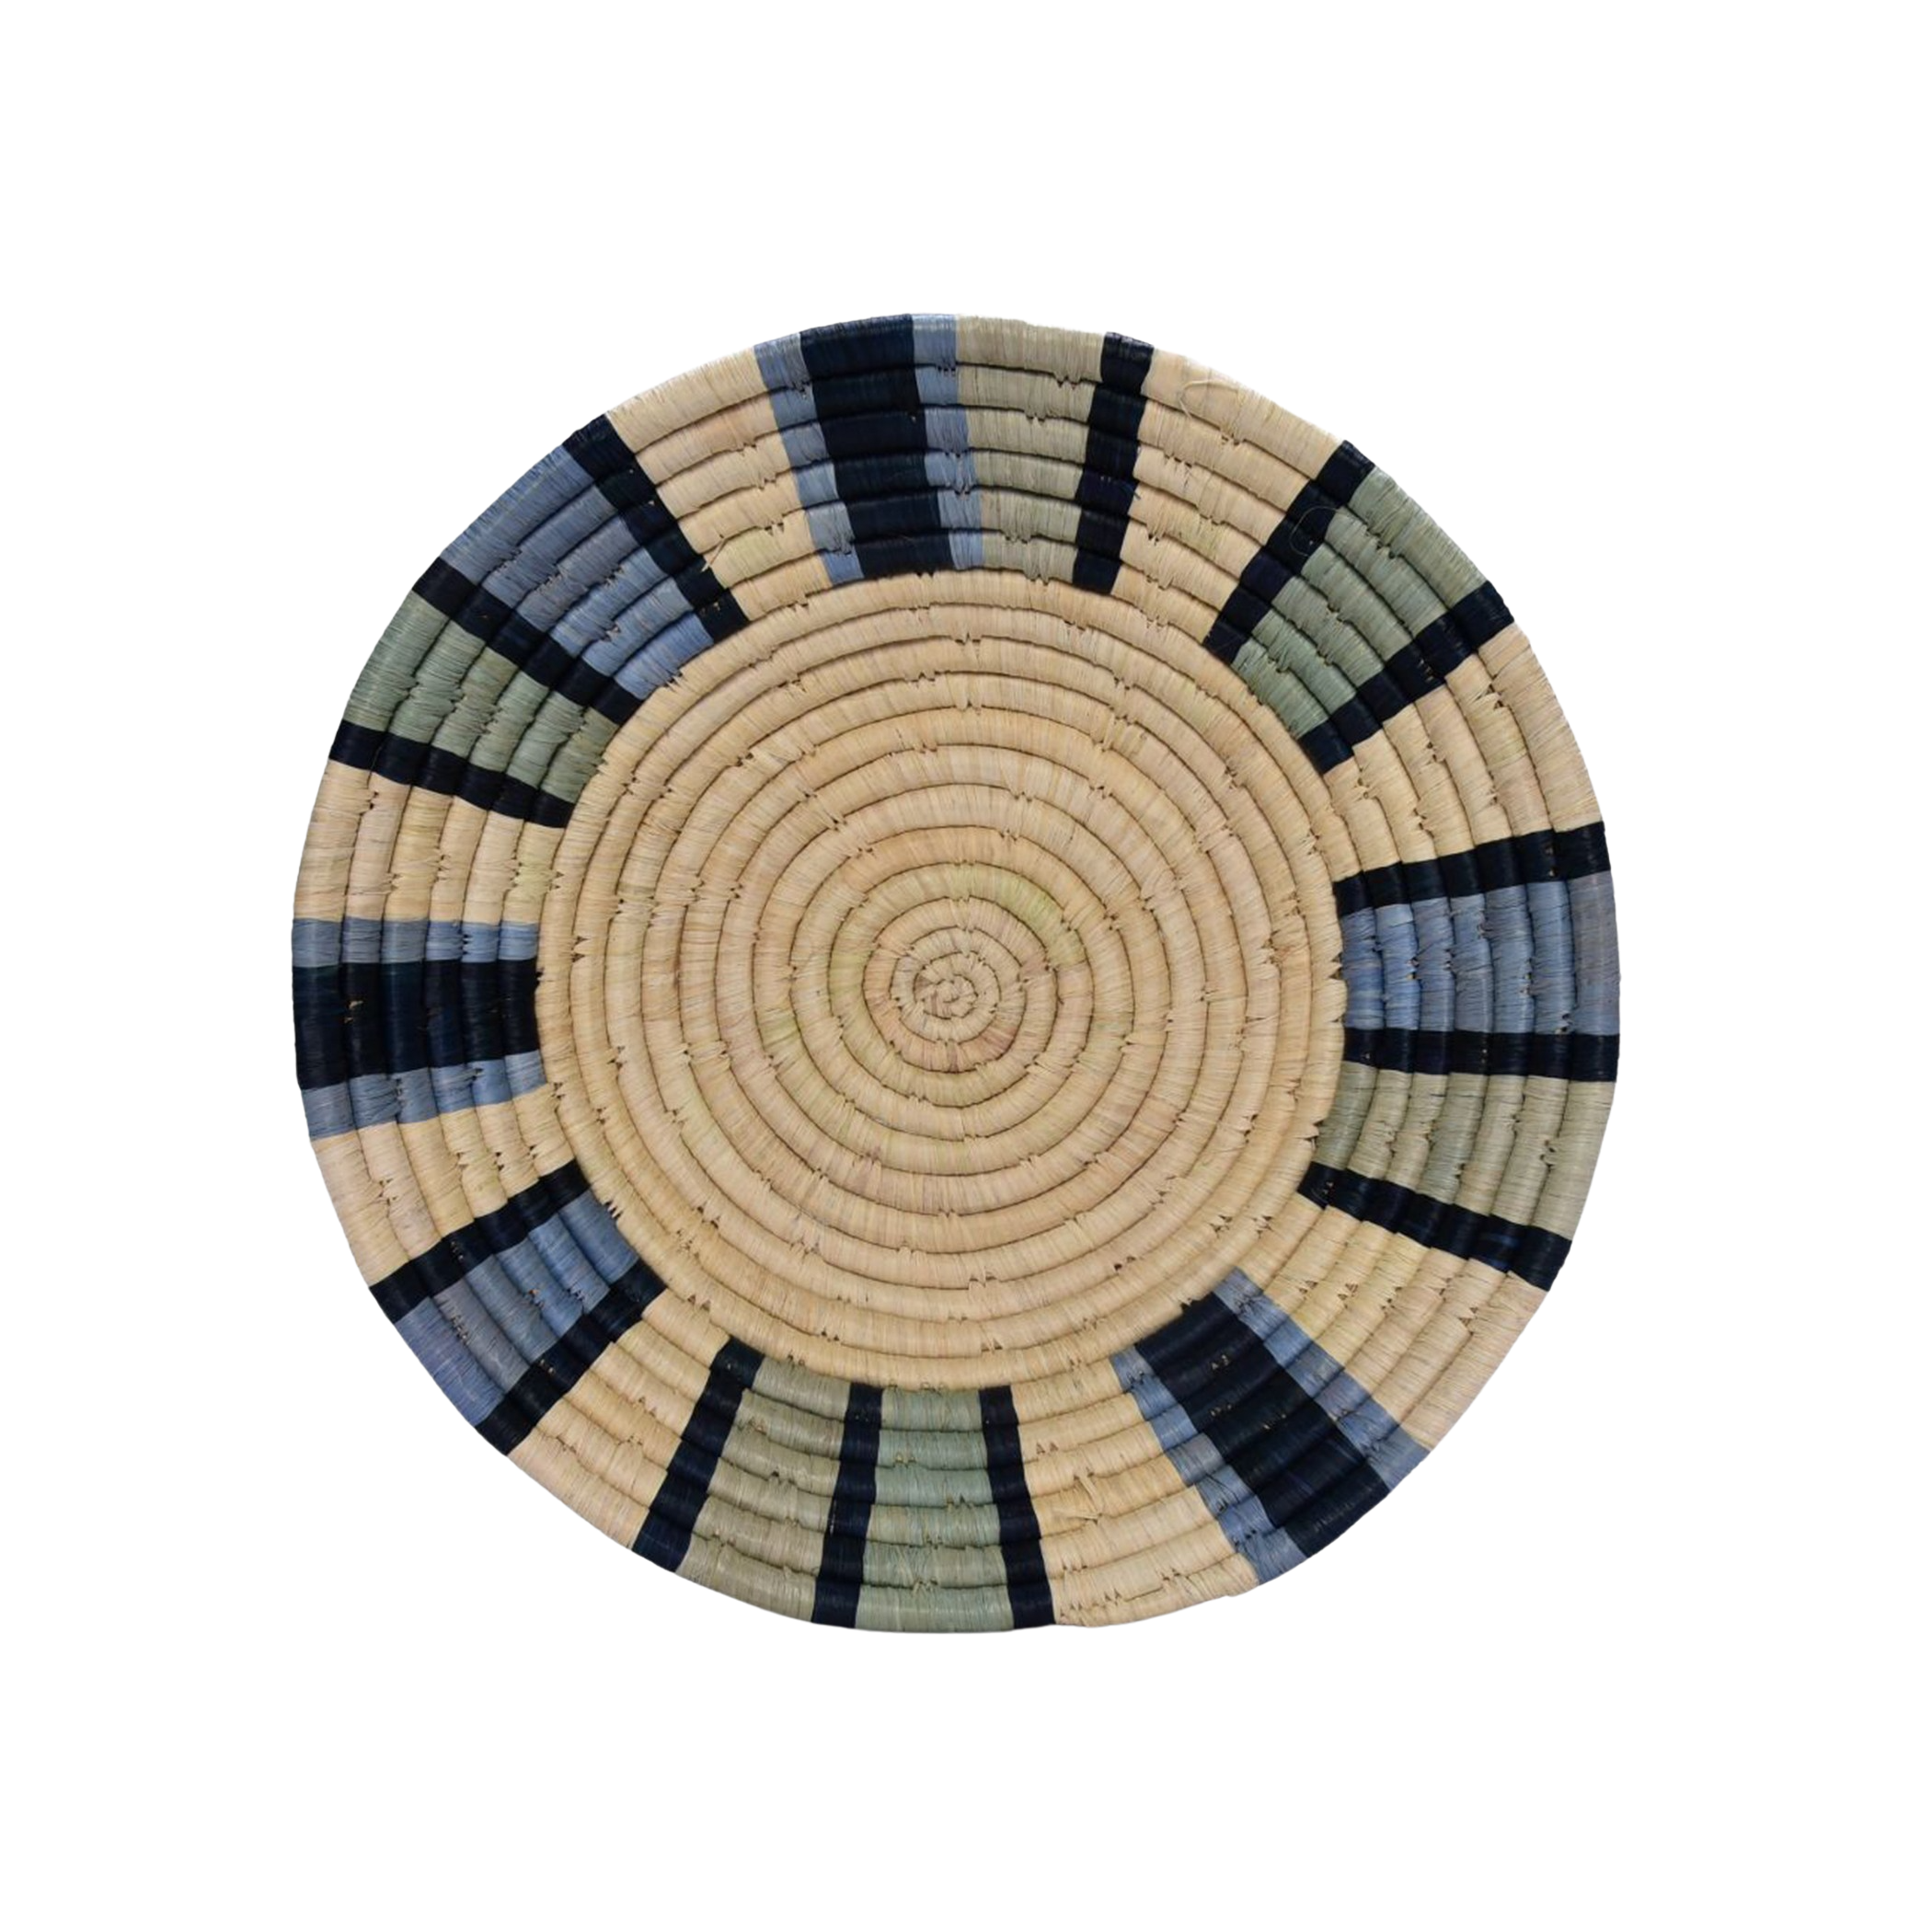 Cesta africana decorativa Blue Stripes de fibra natural - Cesta - ETHNICA DECO